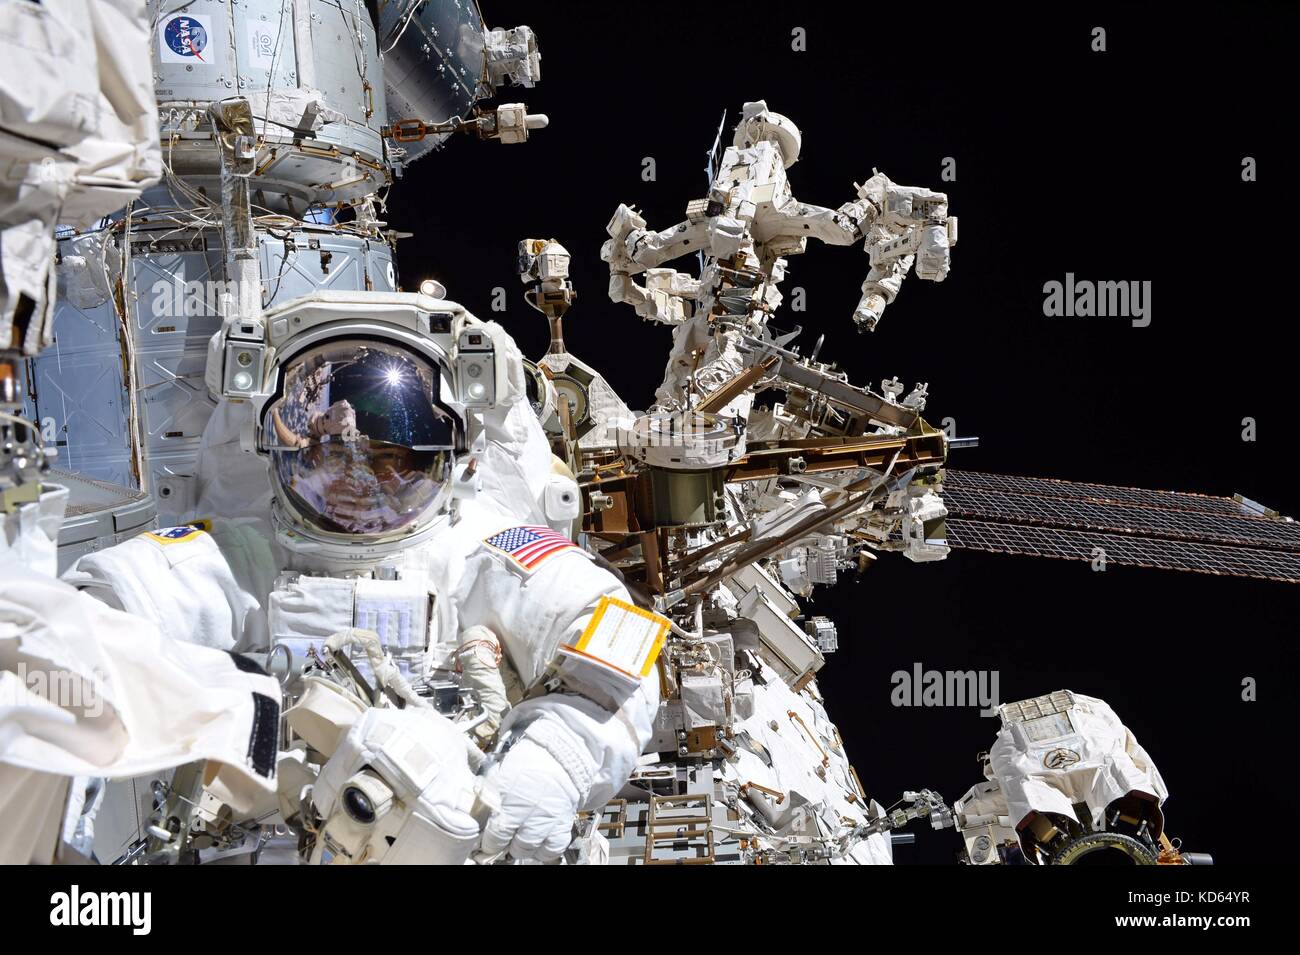 Internationale Raumstation ISS Expedition 53 Crew Mitglied mark Vande hei während eines spacewalk zu einem neuen rastend endeffektor an der Spitze des Roboterarms Canadarm2 Oktober 6, 2017 im Erdorbit. Die bresnik und Mark vande hei für 6 Stunden, 55 Minuten das Teil während der ersten Weltraumspaziergang ihrer Expedition zu ersetzen. Stockfoto